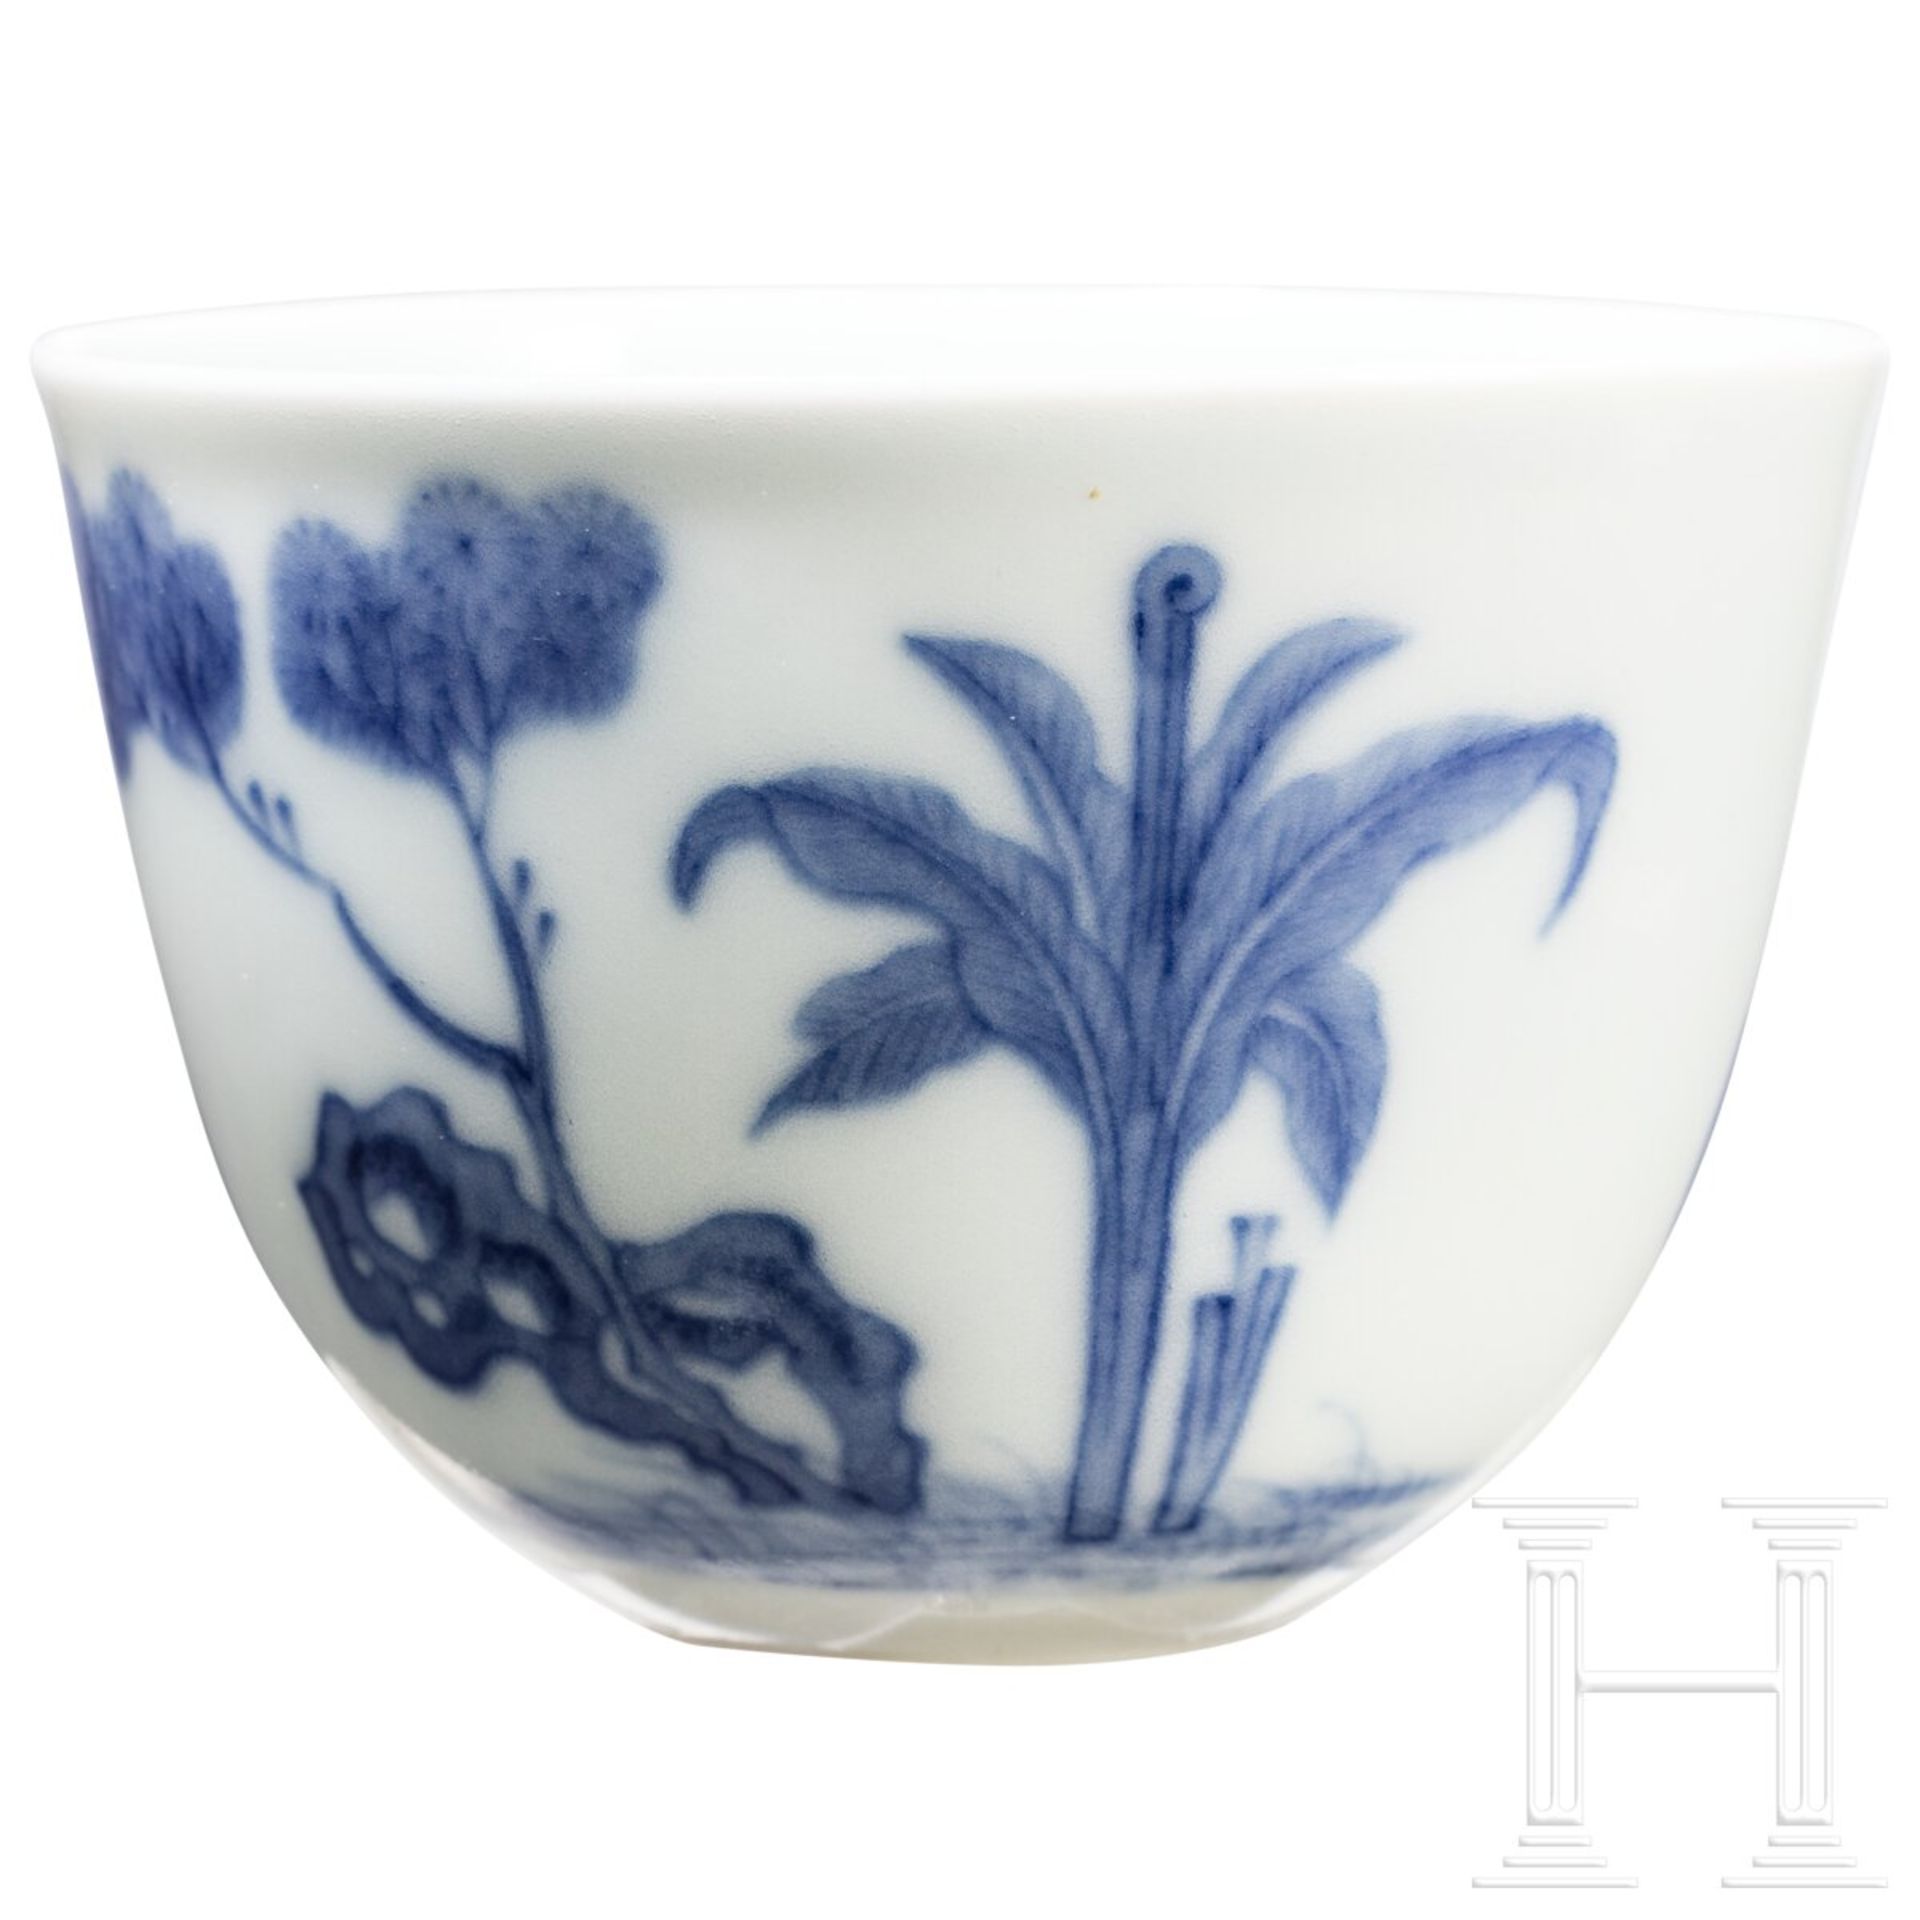 Blau-weißes Koppchen mit erotischer Darstellung und Kangxi-Marke, wohl aus dieser Zeit (18. Jhdt.) - Bild 2 aus 12